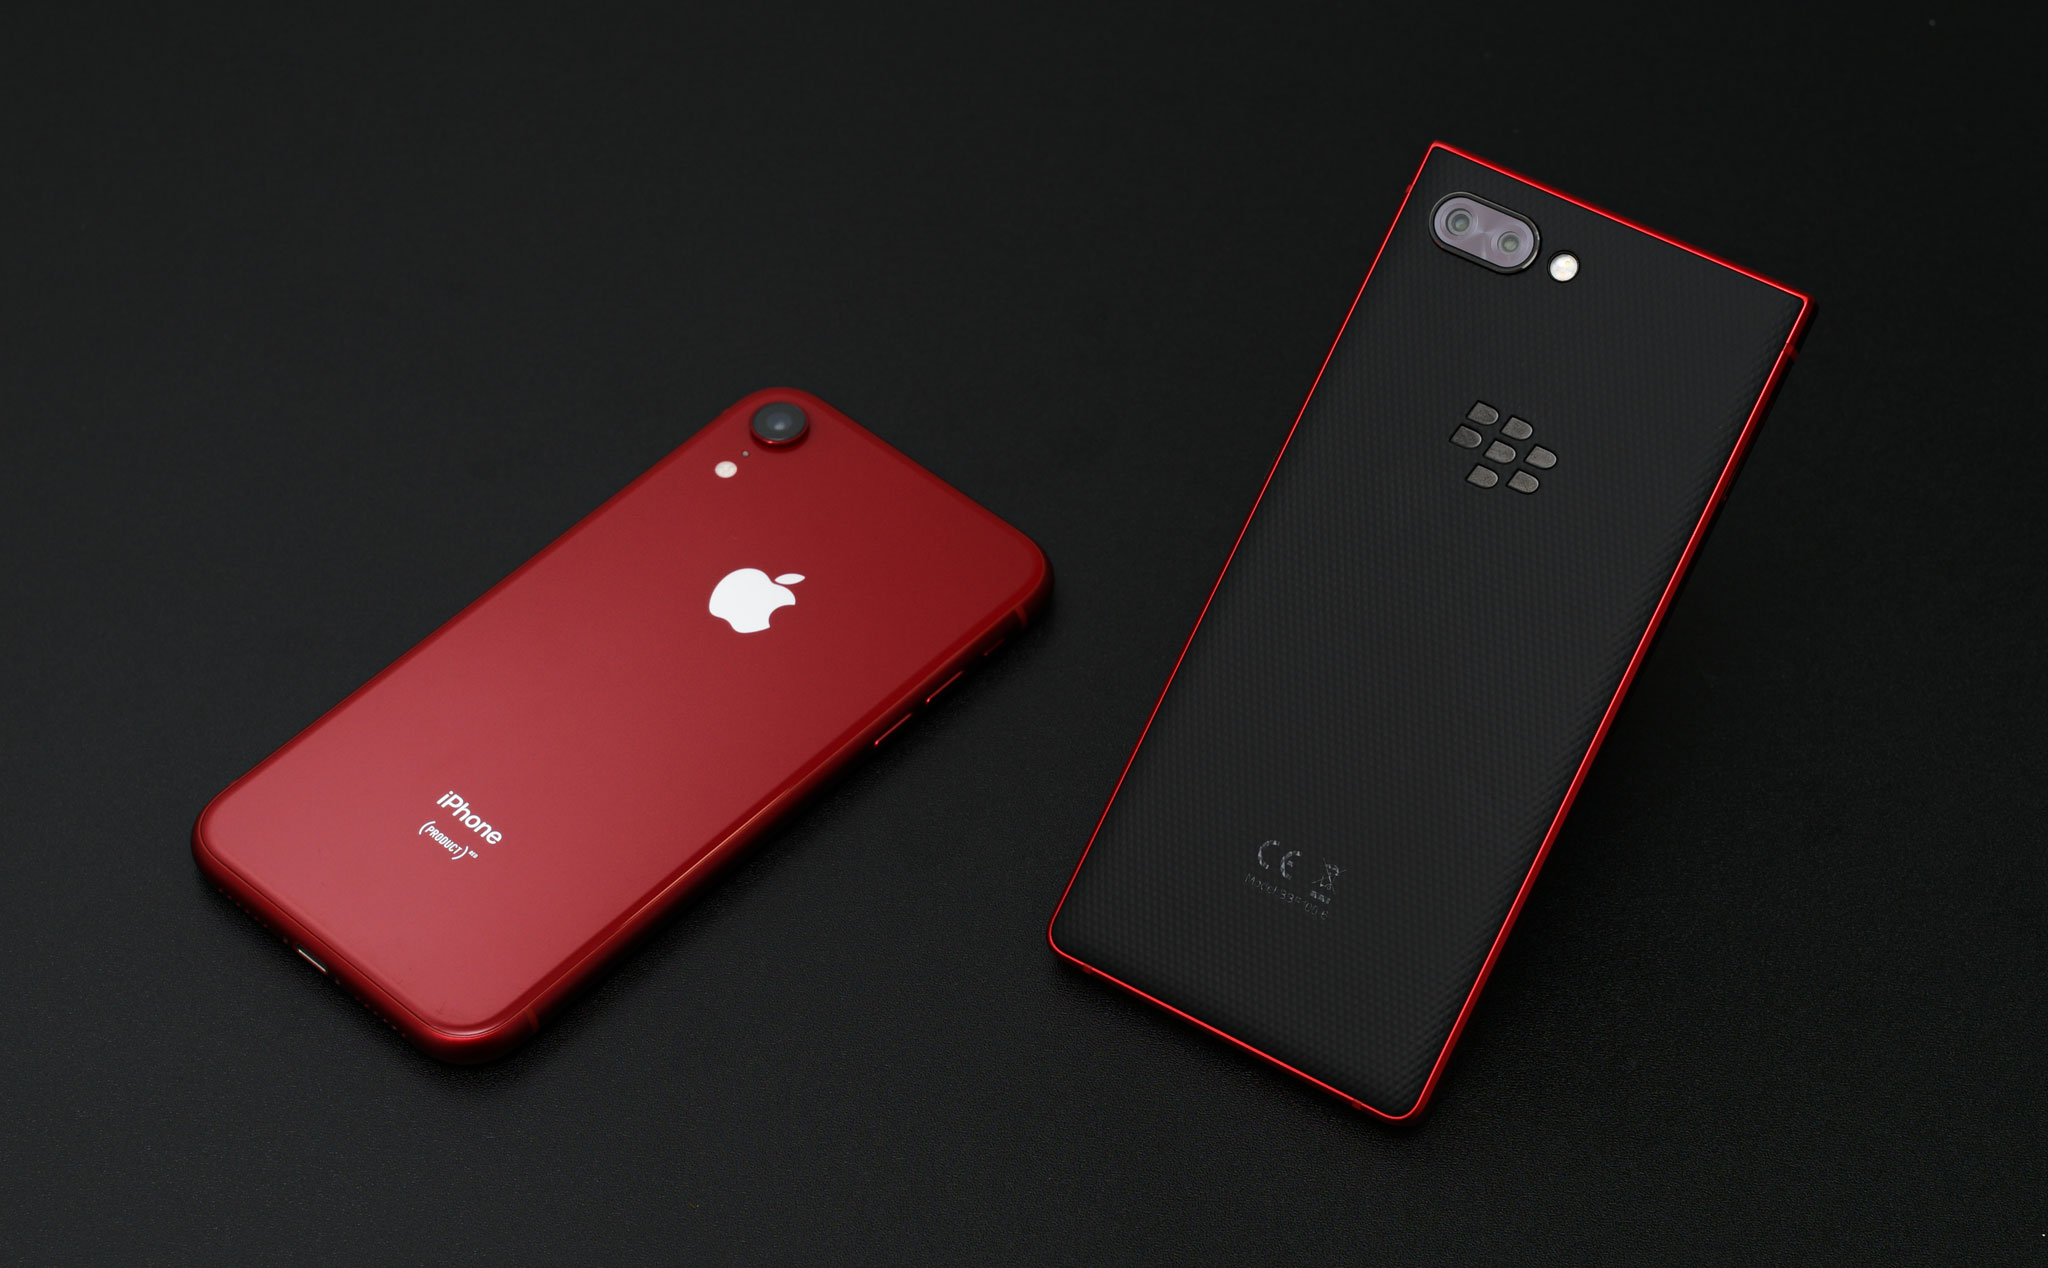 iPhone XR Product RED: Để ủng hộ chiến dịch phòng chống HIV/AIDS của toàn cầu, Apple đã cho ra mắt phiên bản iPhone XR Product RED vô cùng ấn tượng! Với thiết kế đầy màu sắc và hiện đại, hiệu suất hoạt động mạnh mẽ và chất lượng camera tuyệt vời, iPhone XR Product RED chắc chắn sẽ làm hài lòng người dùng khó tính nhất.